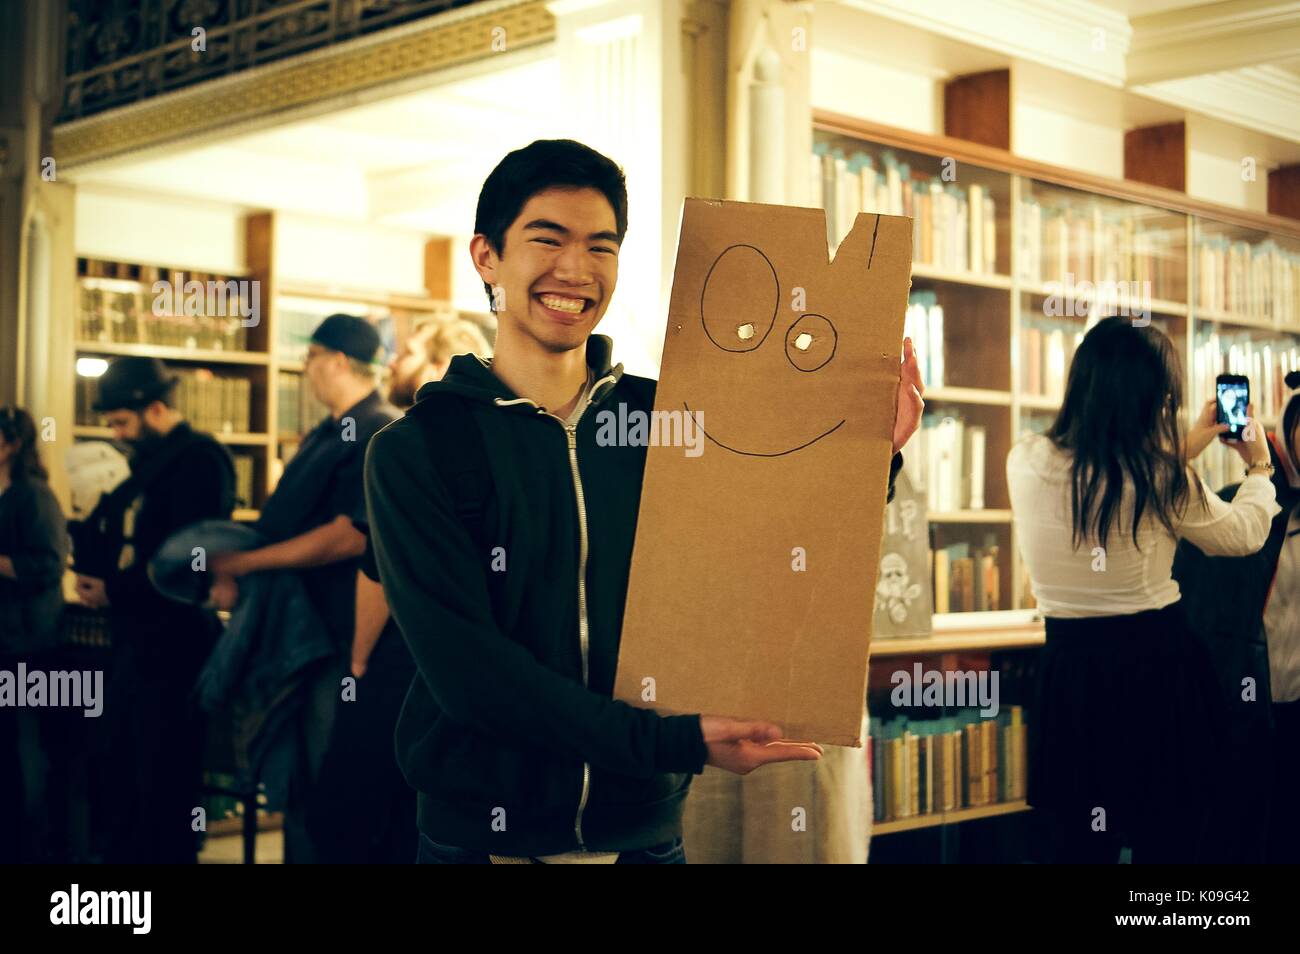 Ein Student für ein Foto posieren, er lächelt und hält ein Board, dass zwei Löcher für die Augen und ein Lächeln, gezeichnet - an Halloween an der Johns Hopkins University's George Peabody Library, 2015. Mit freundlicher Genehmigung von Eric Chen. Stockfoto